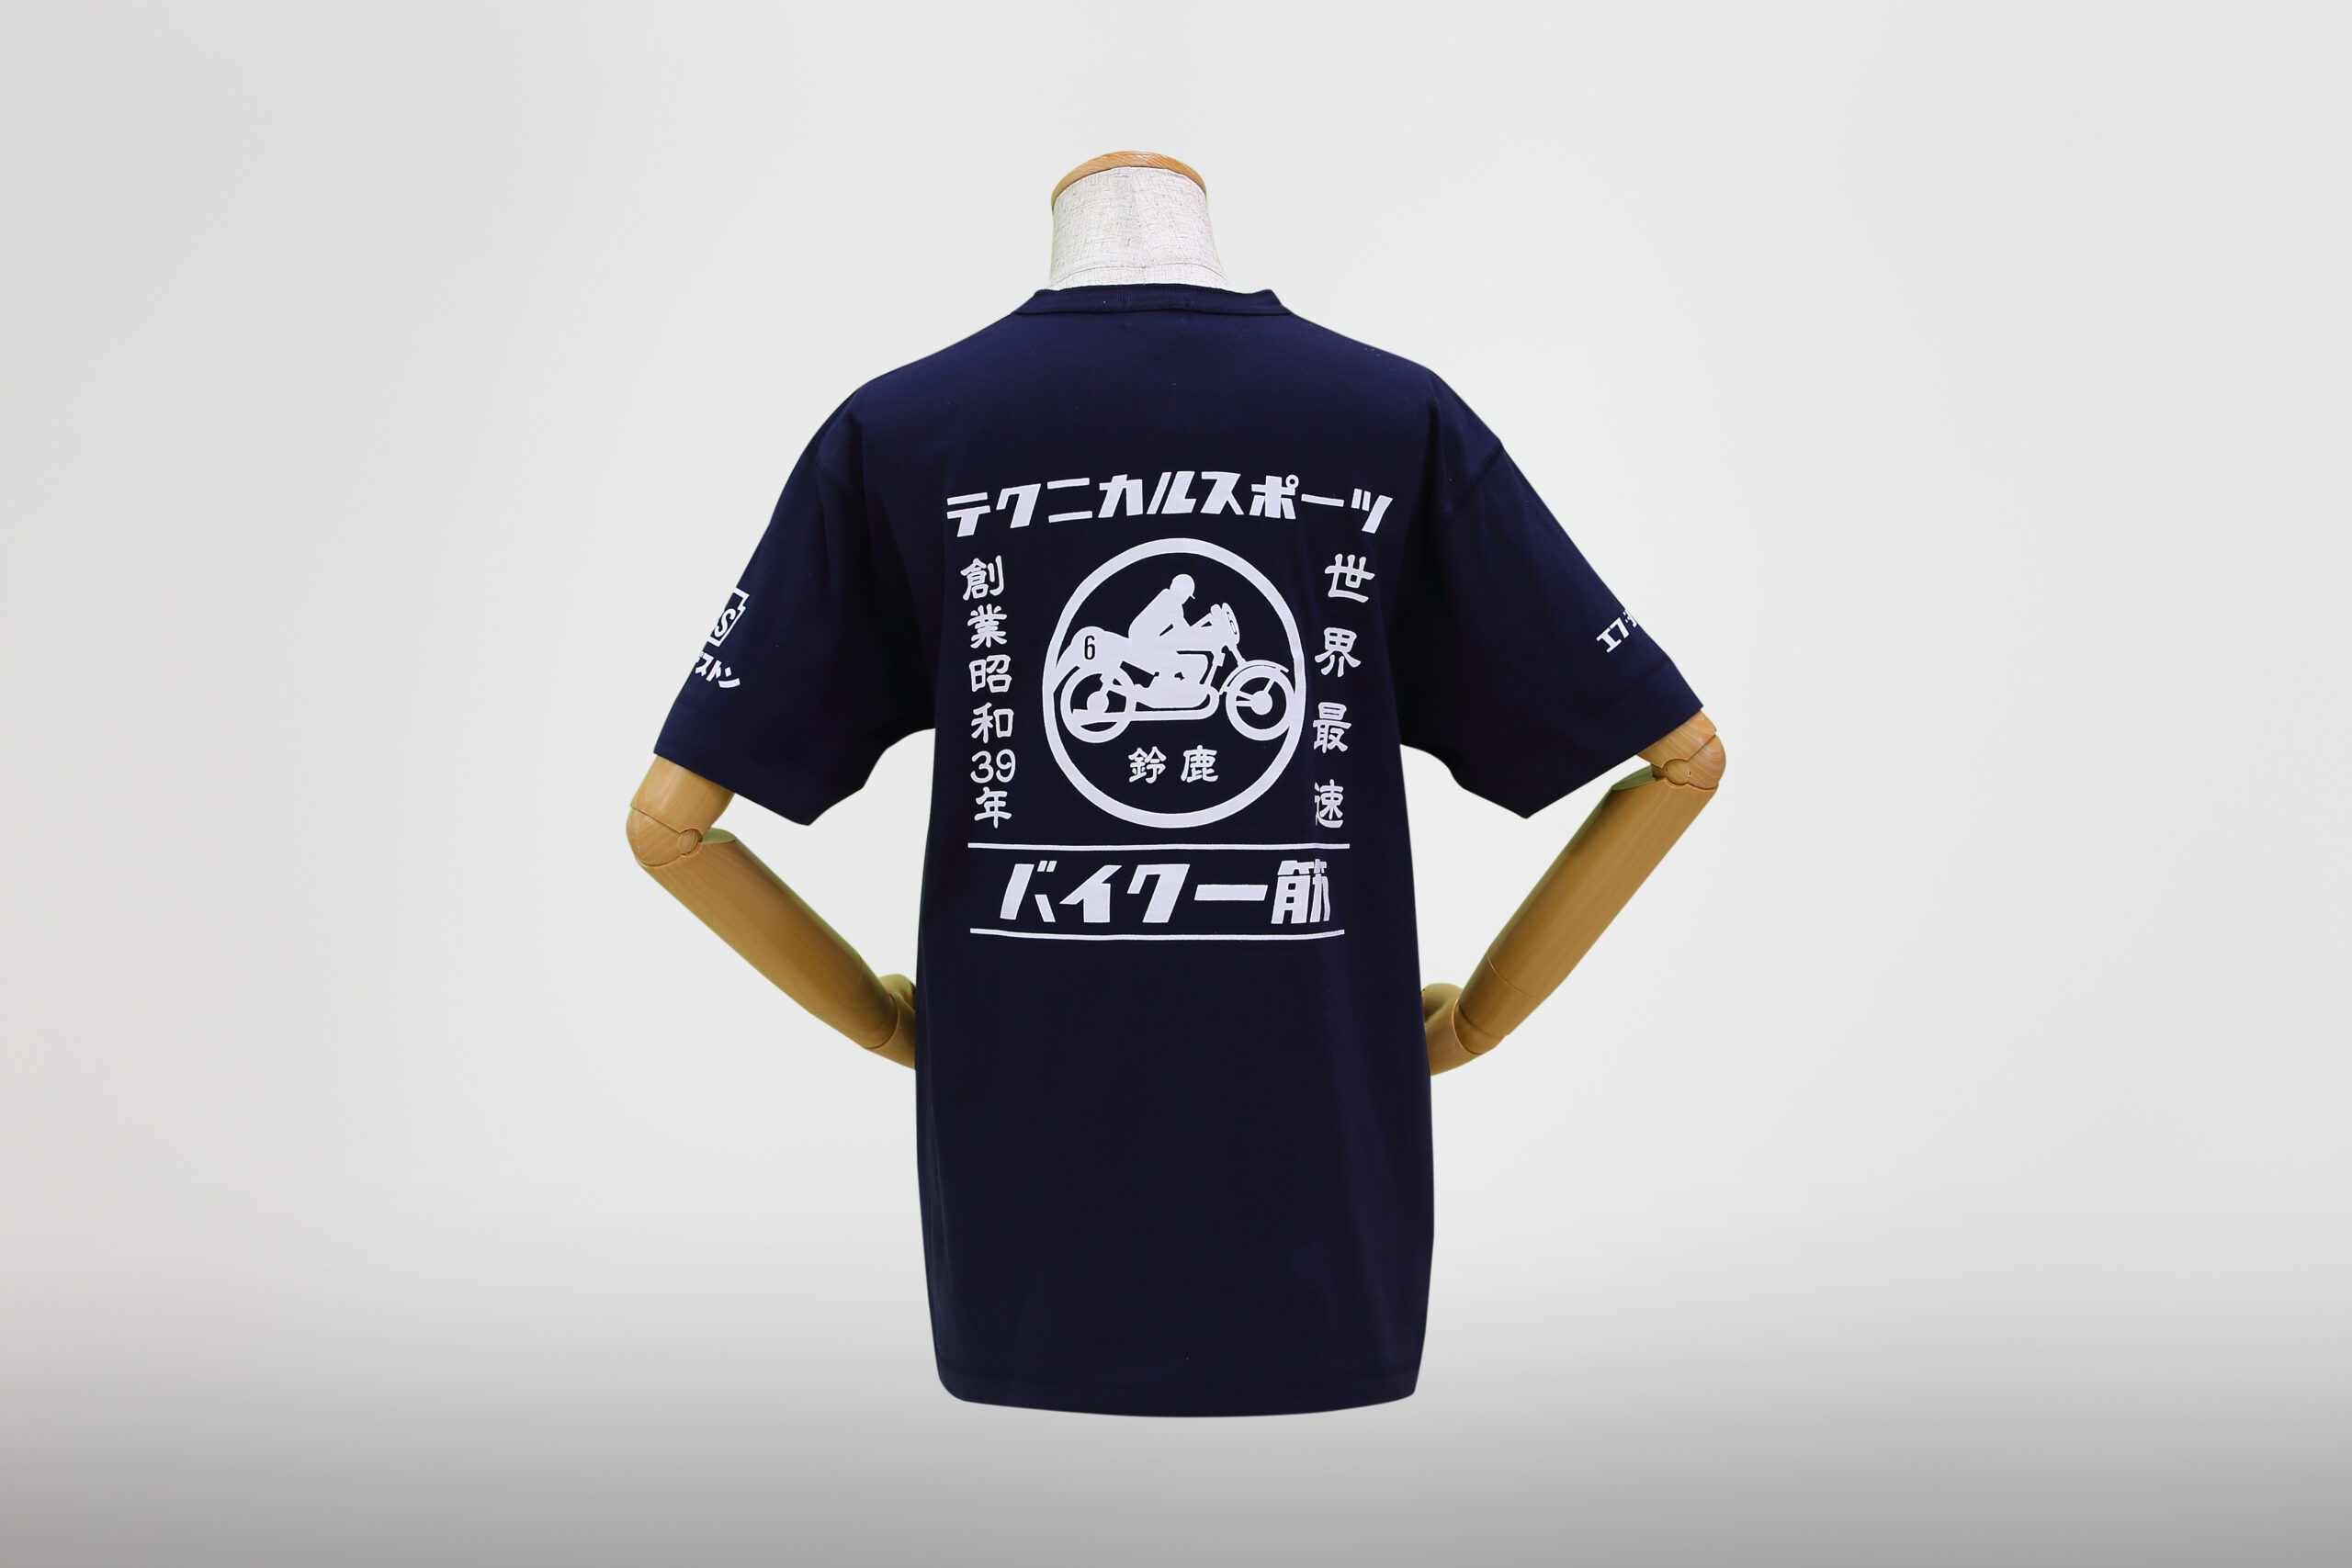 新商品】バイク一筋/テクニカルスポーツ ヘンリーネックTシャツの発売